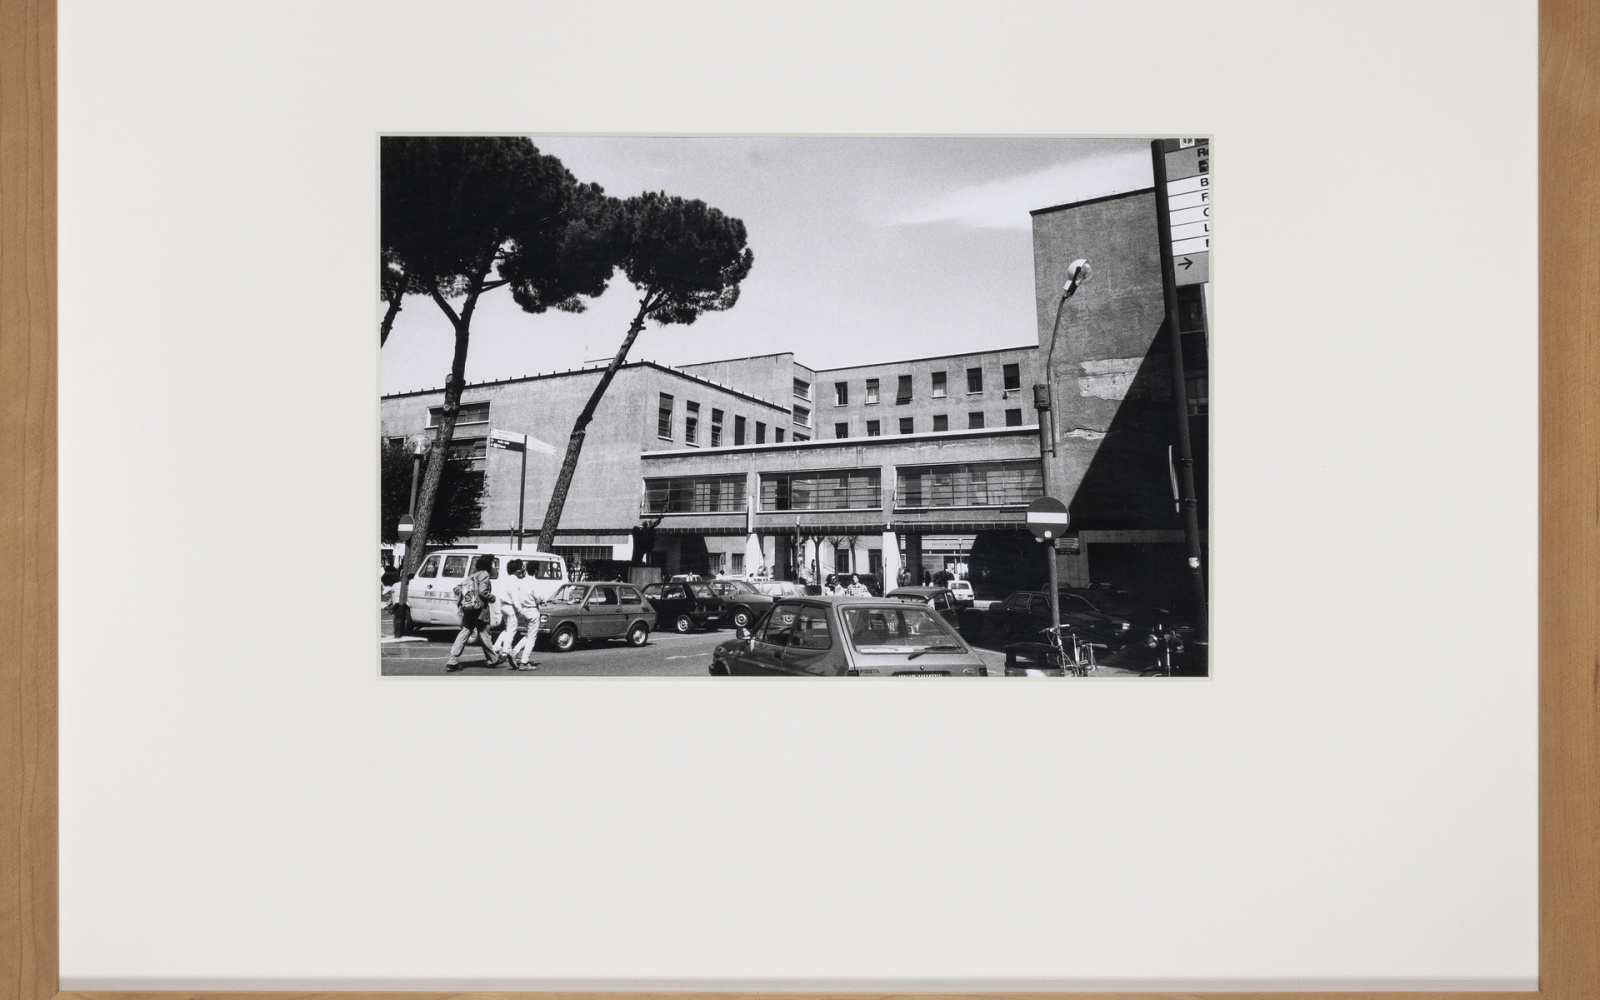 ROM. ISTITUTO DI FISICA, CITTÀ UNIVERSITARIA GUISEPPE PAGANO, 1932-35